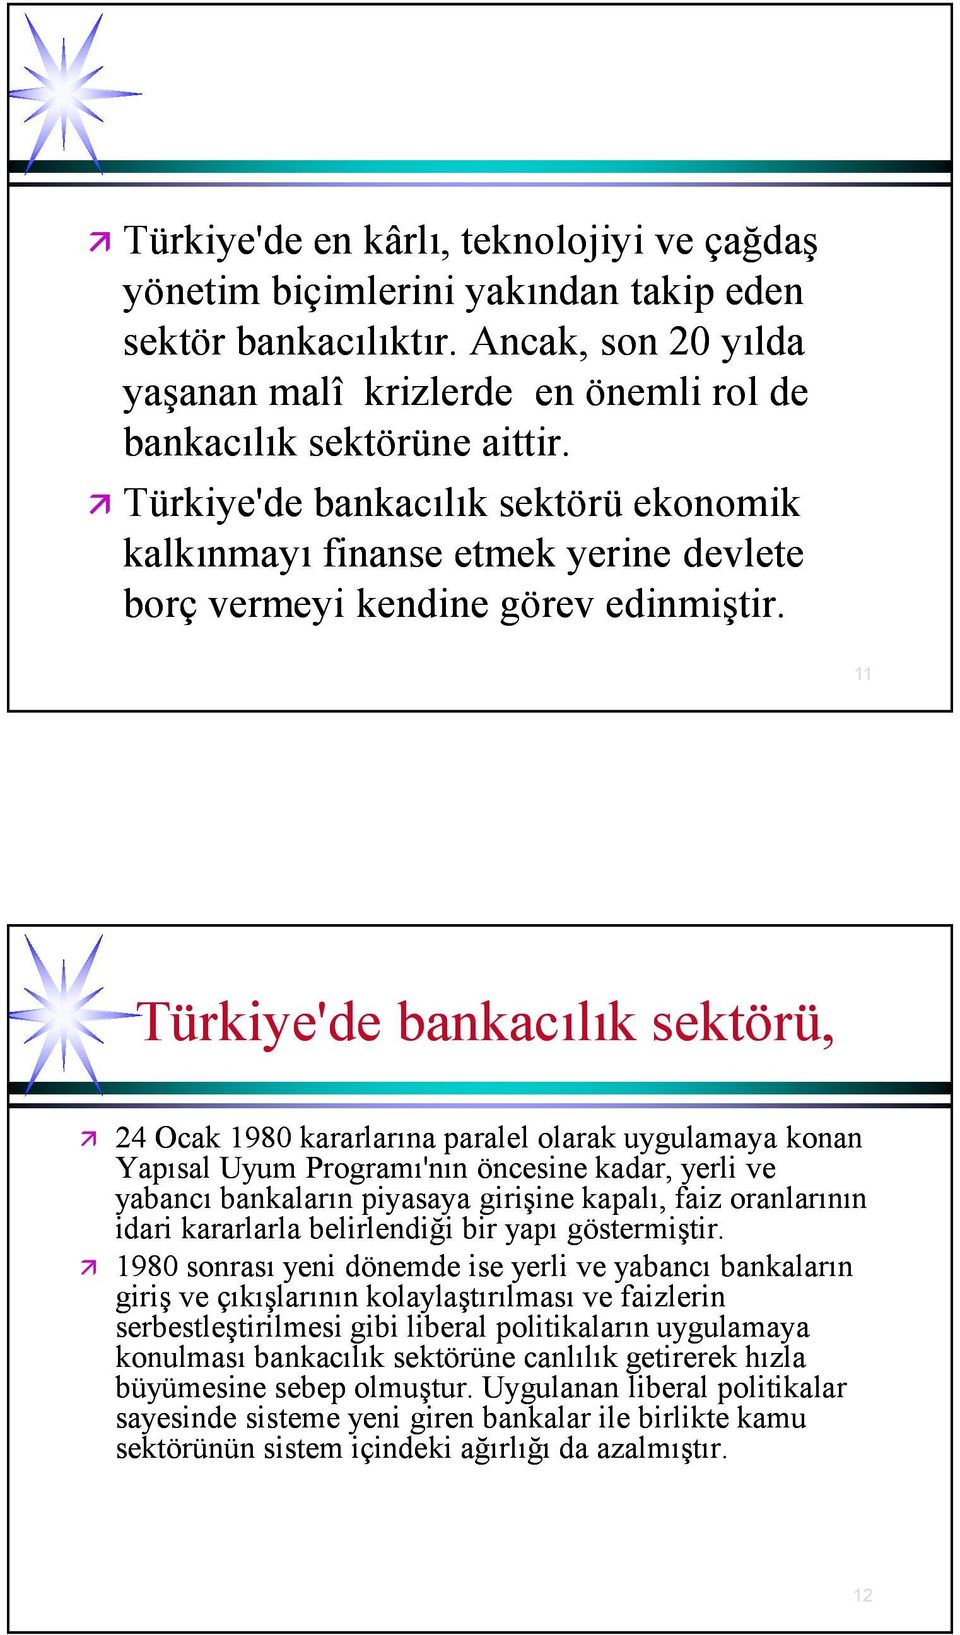 11 Türkiye'de bankacılık sektörü, 24 Ocak 1980 kararlarına paralel olarak uygulamaya konan Yapısal Uyum Programı'nın öncesine kadar, yerli ve yabancı bankaların piyasaya girişine kapalı, faiz